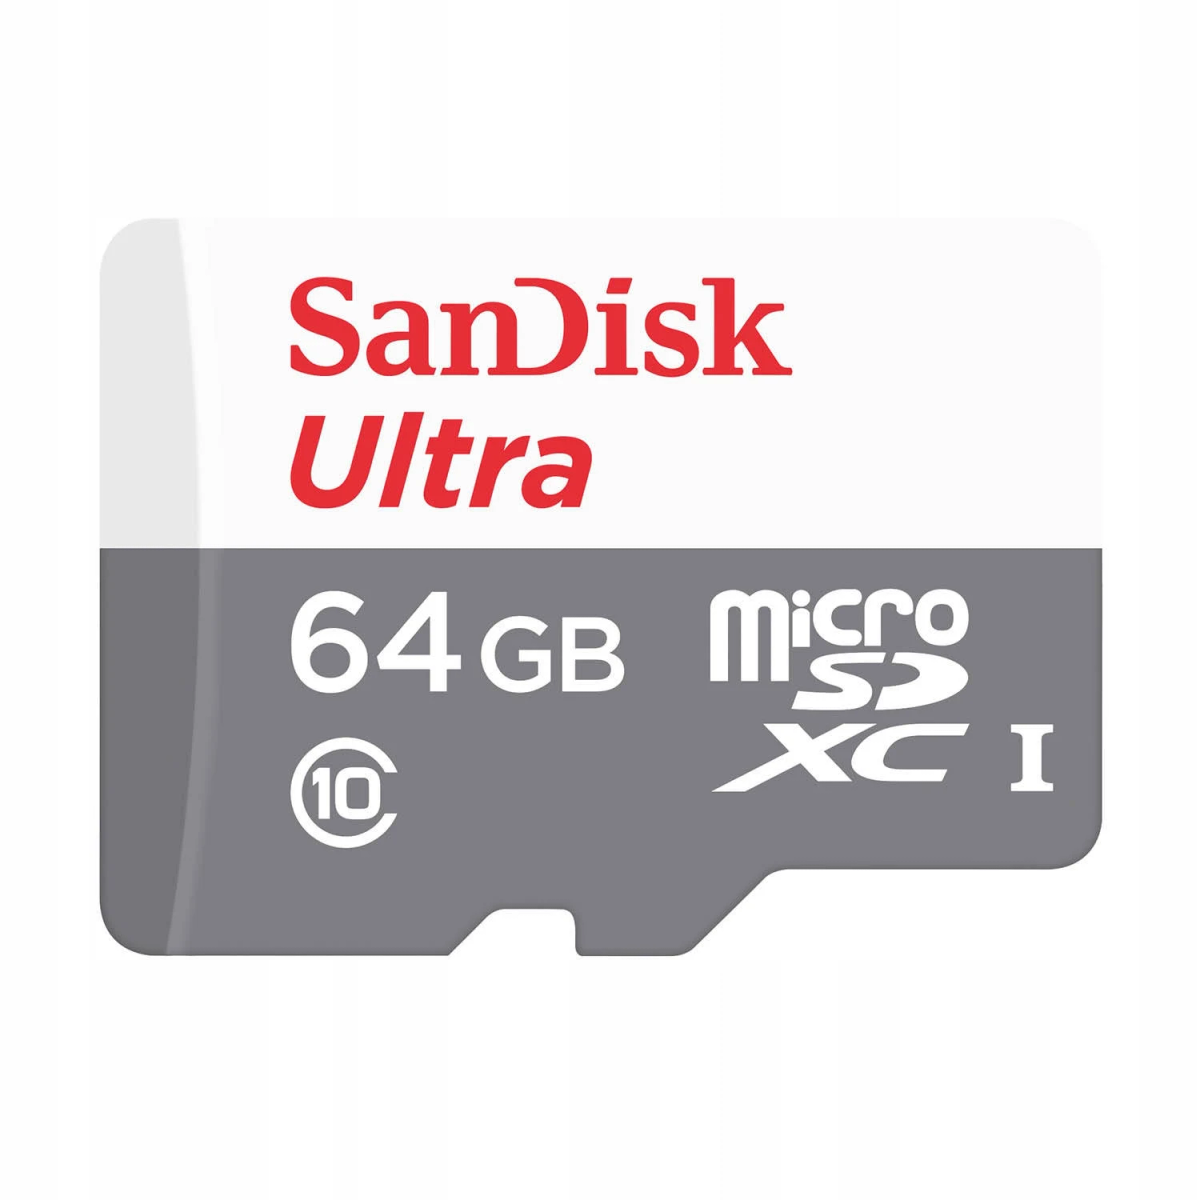 100 SD 14393642, SANDISK GB, MB/s 64 Speicherkarte,